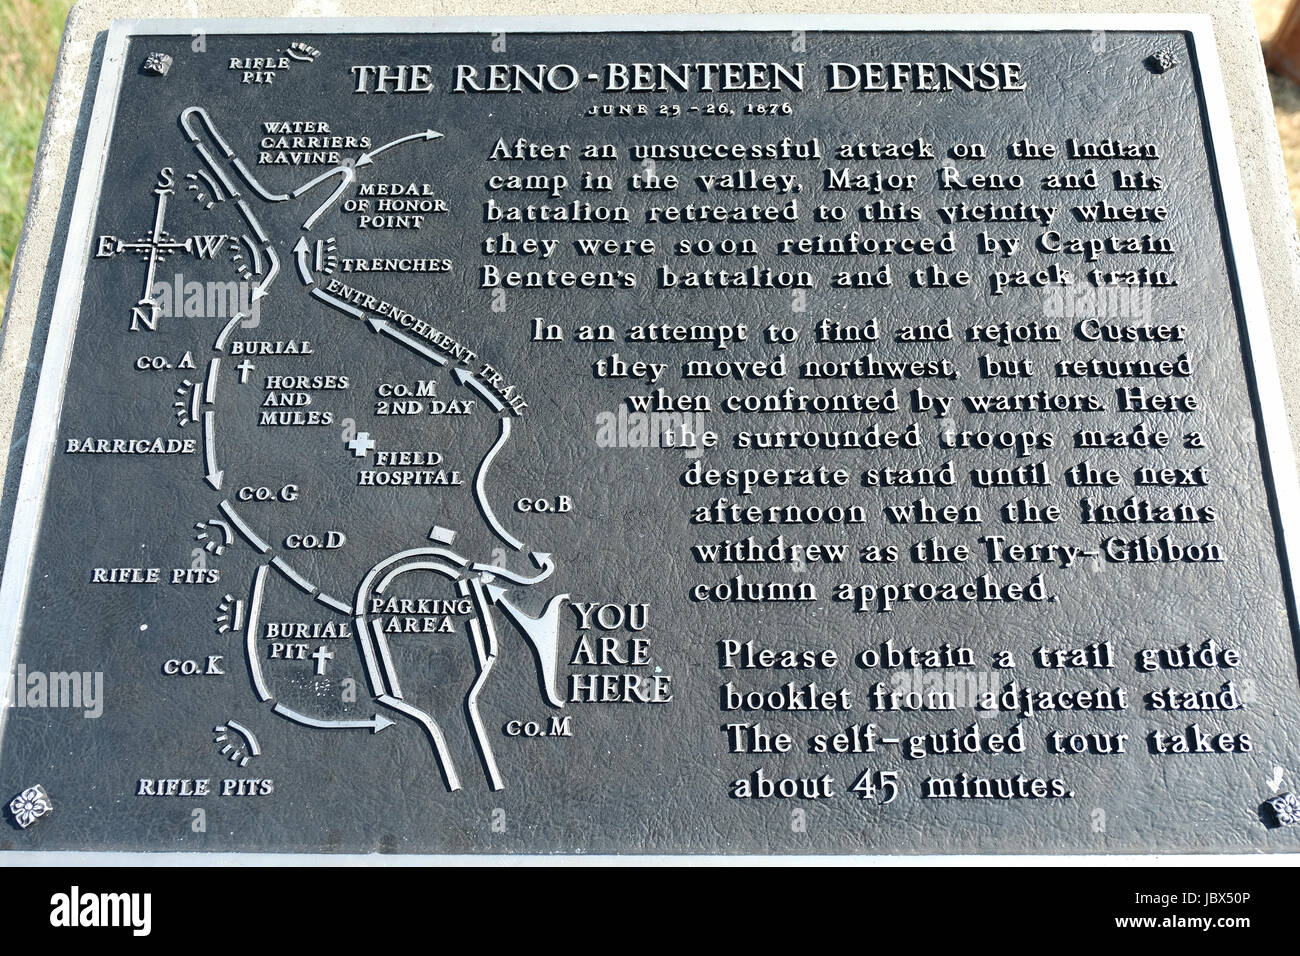 Commemorative plaque describing the Reno-Benteen defense during the battle of Little Bighorn Montana, USA in 1876. Stock Photo